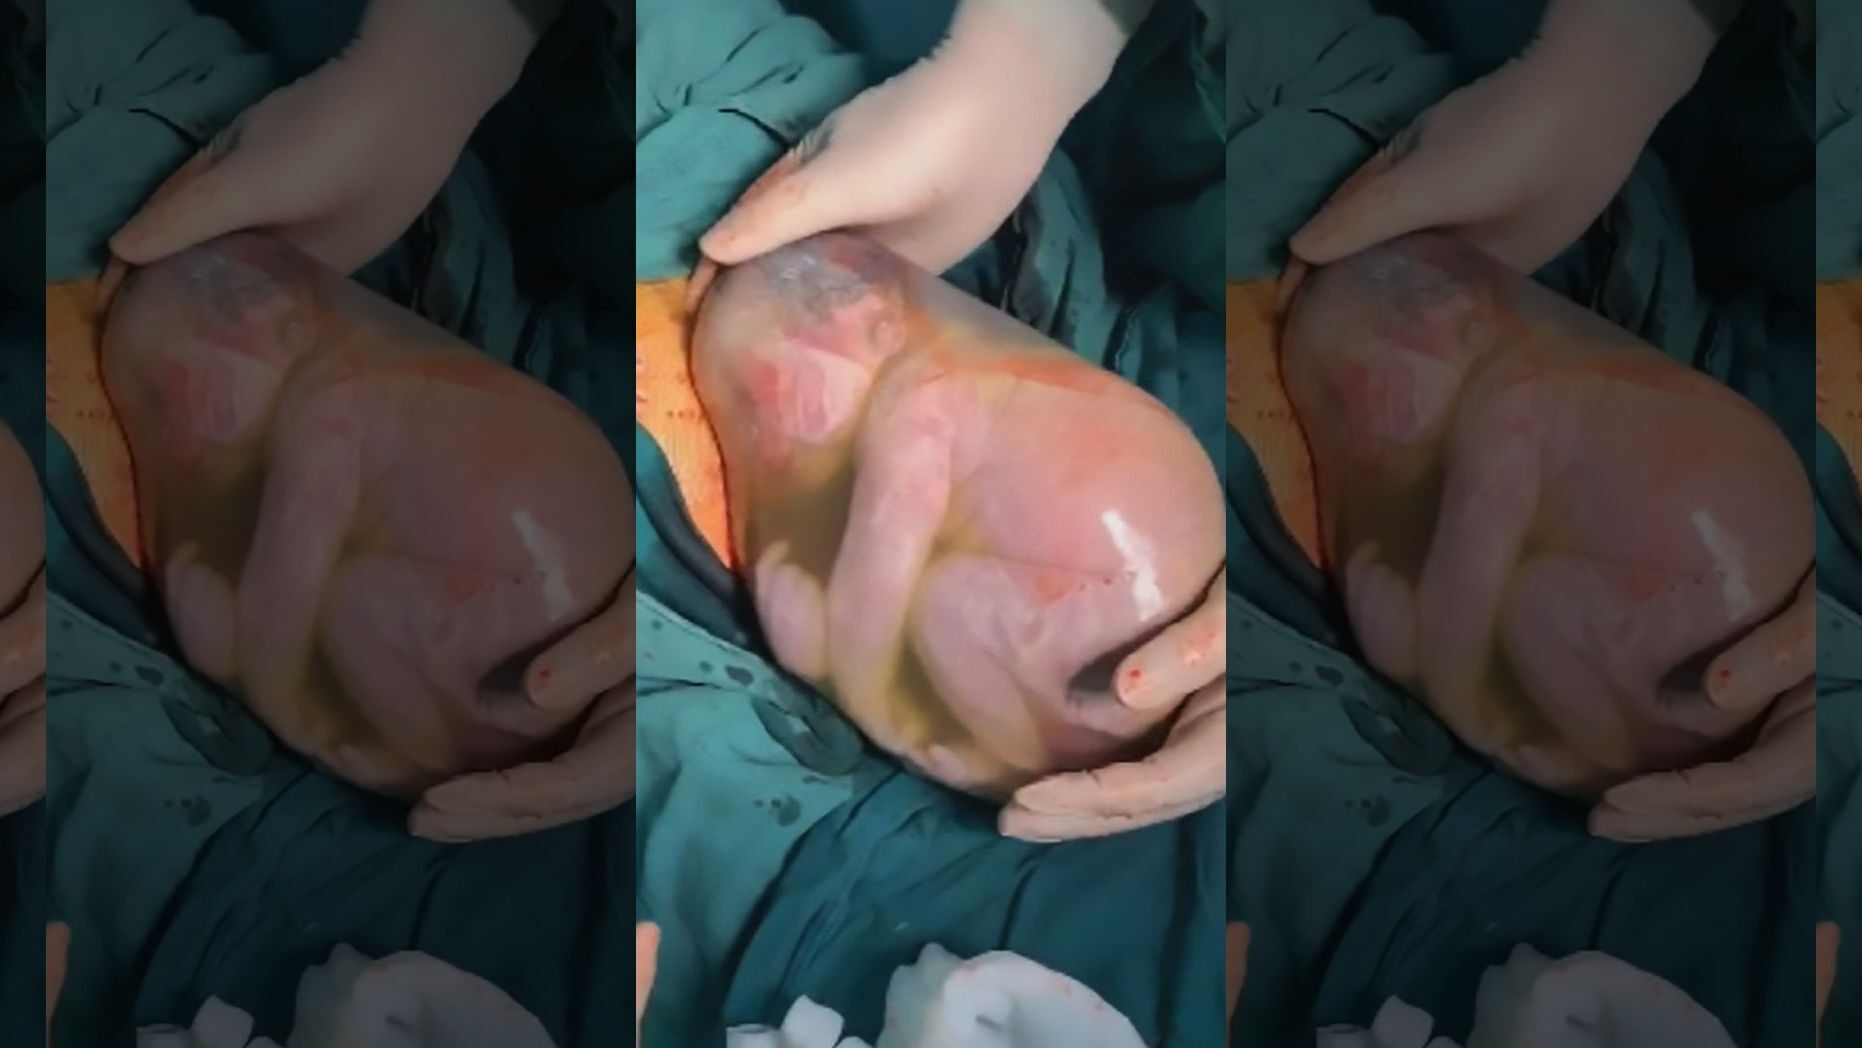   Một em bé người Trung Quốc sinh ra vẫn còn nguyên bọc ối (Ảnh Internet)  